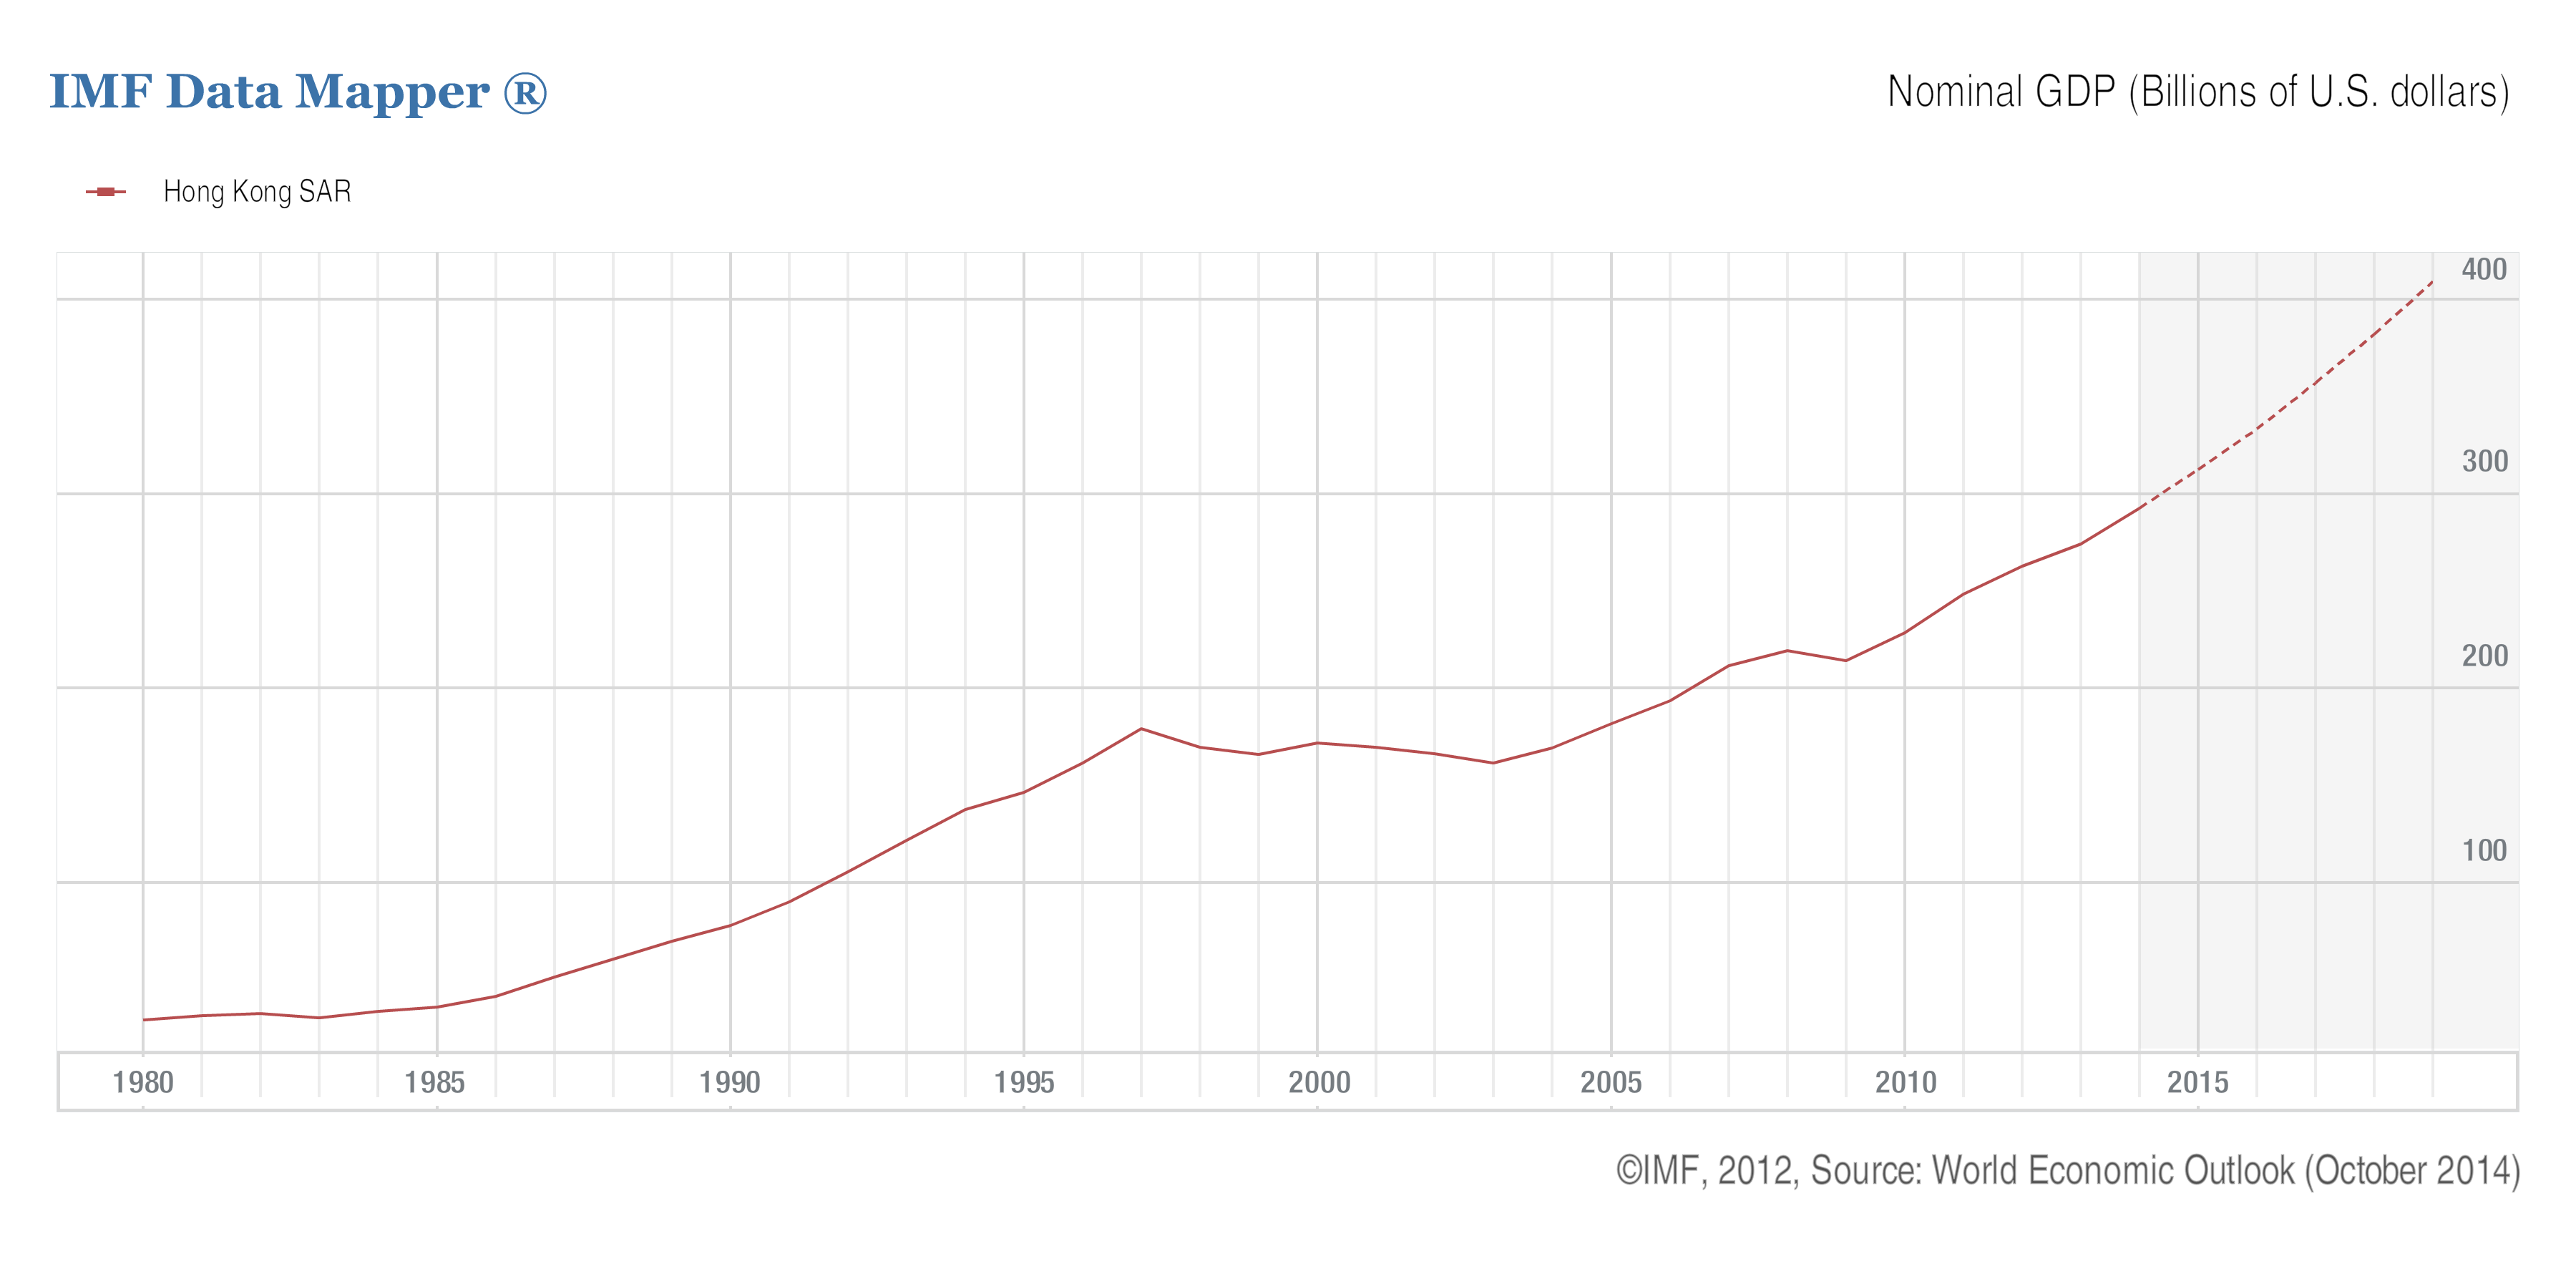 1940年美国gdp是多少_中国那么努力,人均GDP却只相当40年前的美国 未来还有戏么